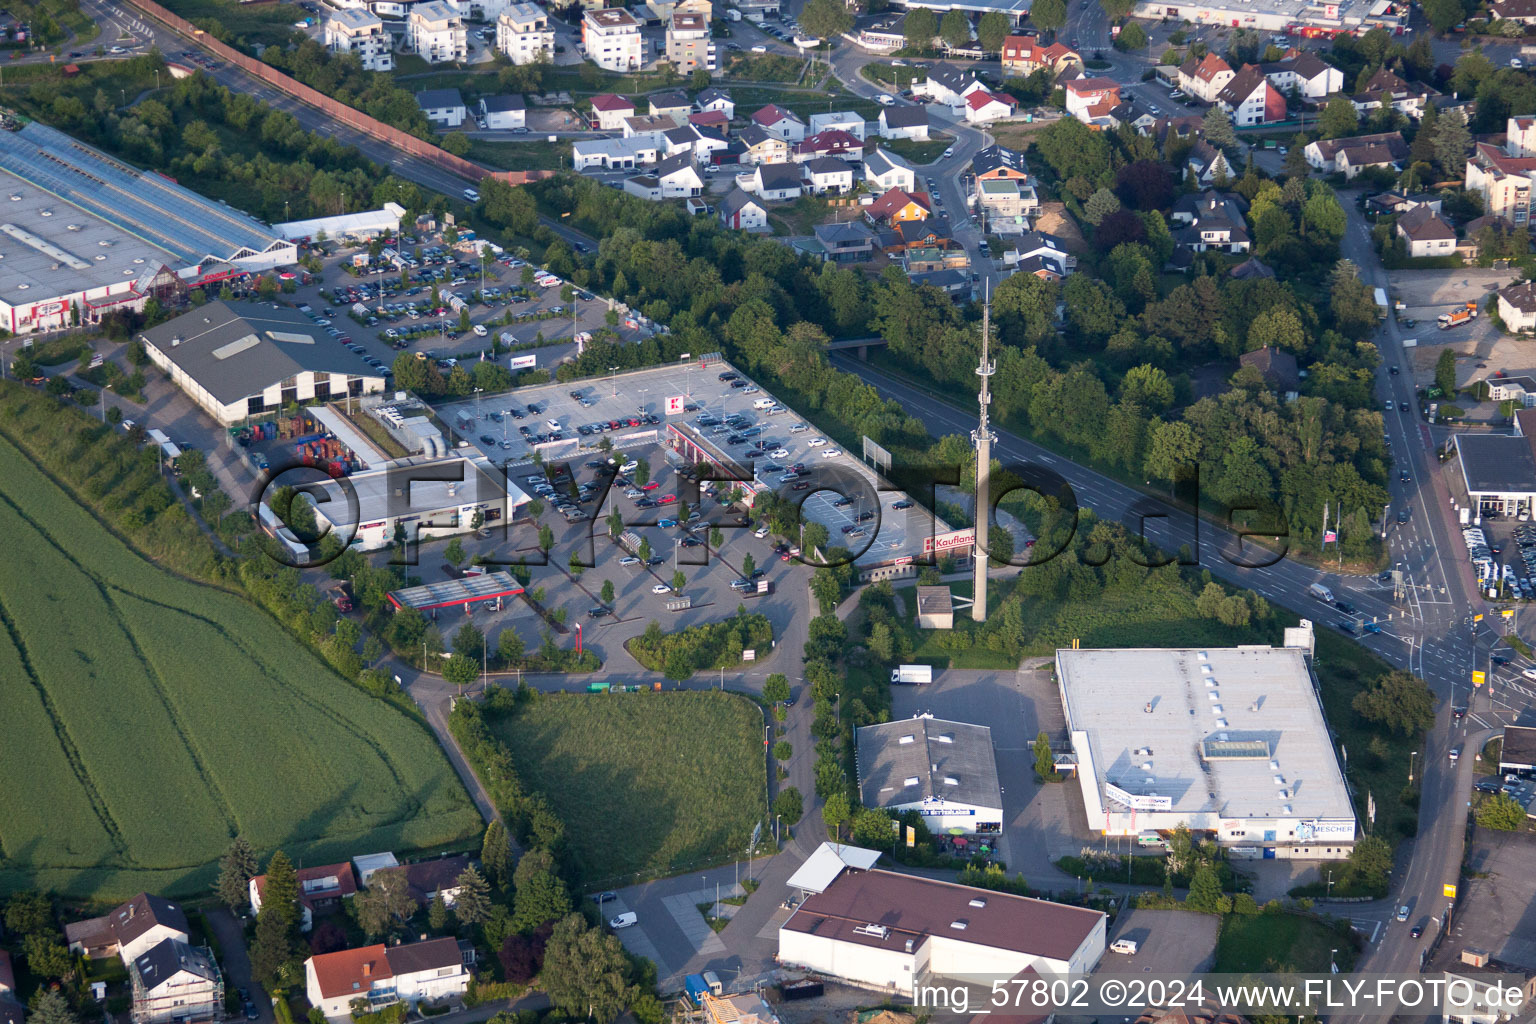 Vue aérienne de Centre commercial Kaufland et quincaillerie Toom dans le quartier de Diedelsheim à Bretten dans le département Bade-Wurtemberg, Allemagne